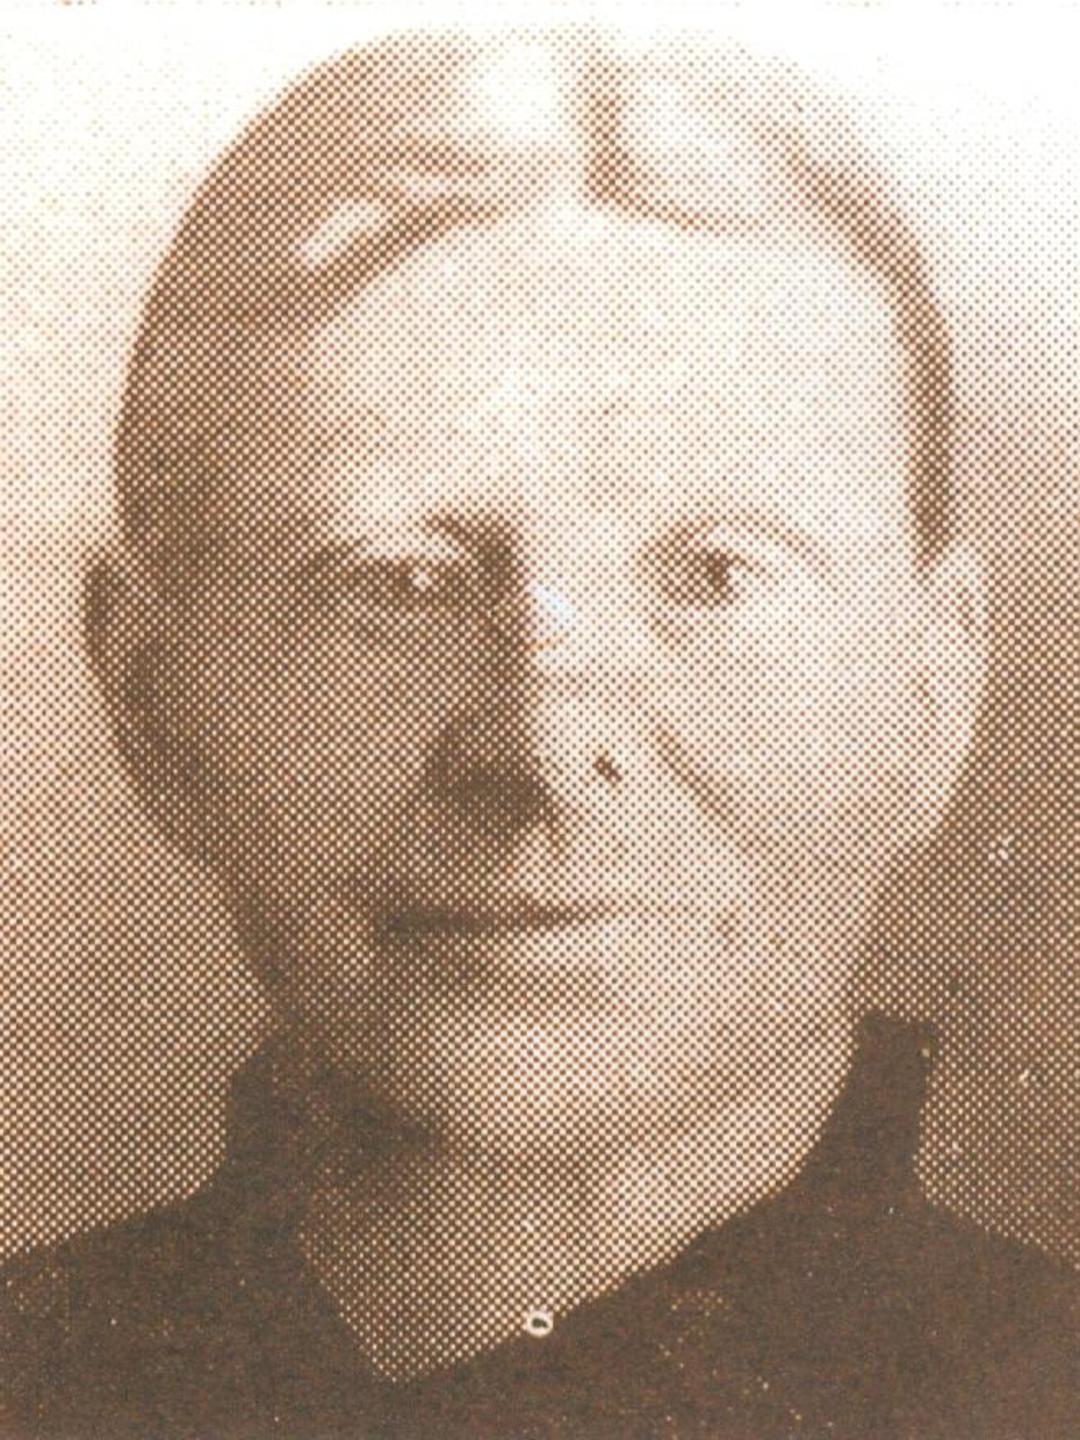 Ruth Ann Smith (1845 - 1911) Profile